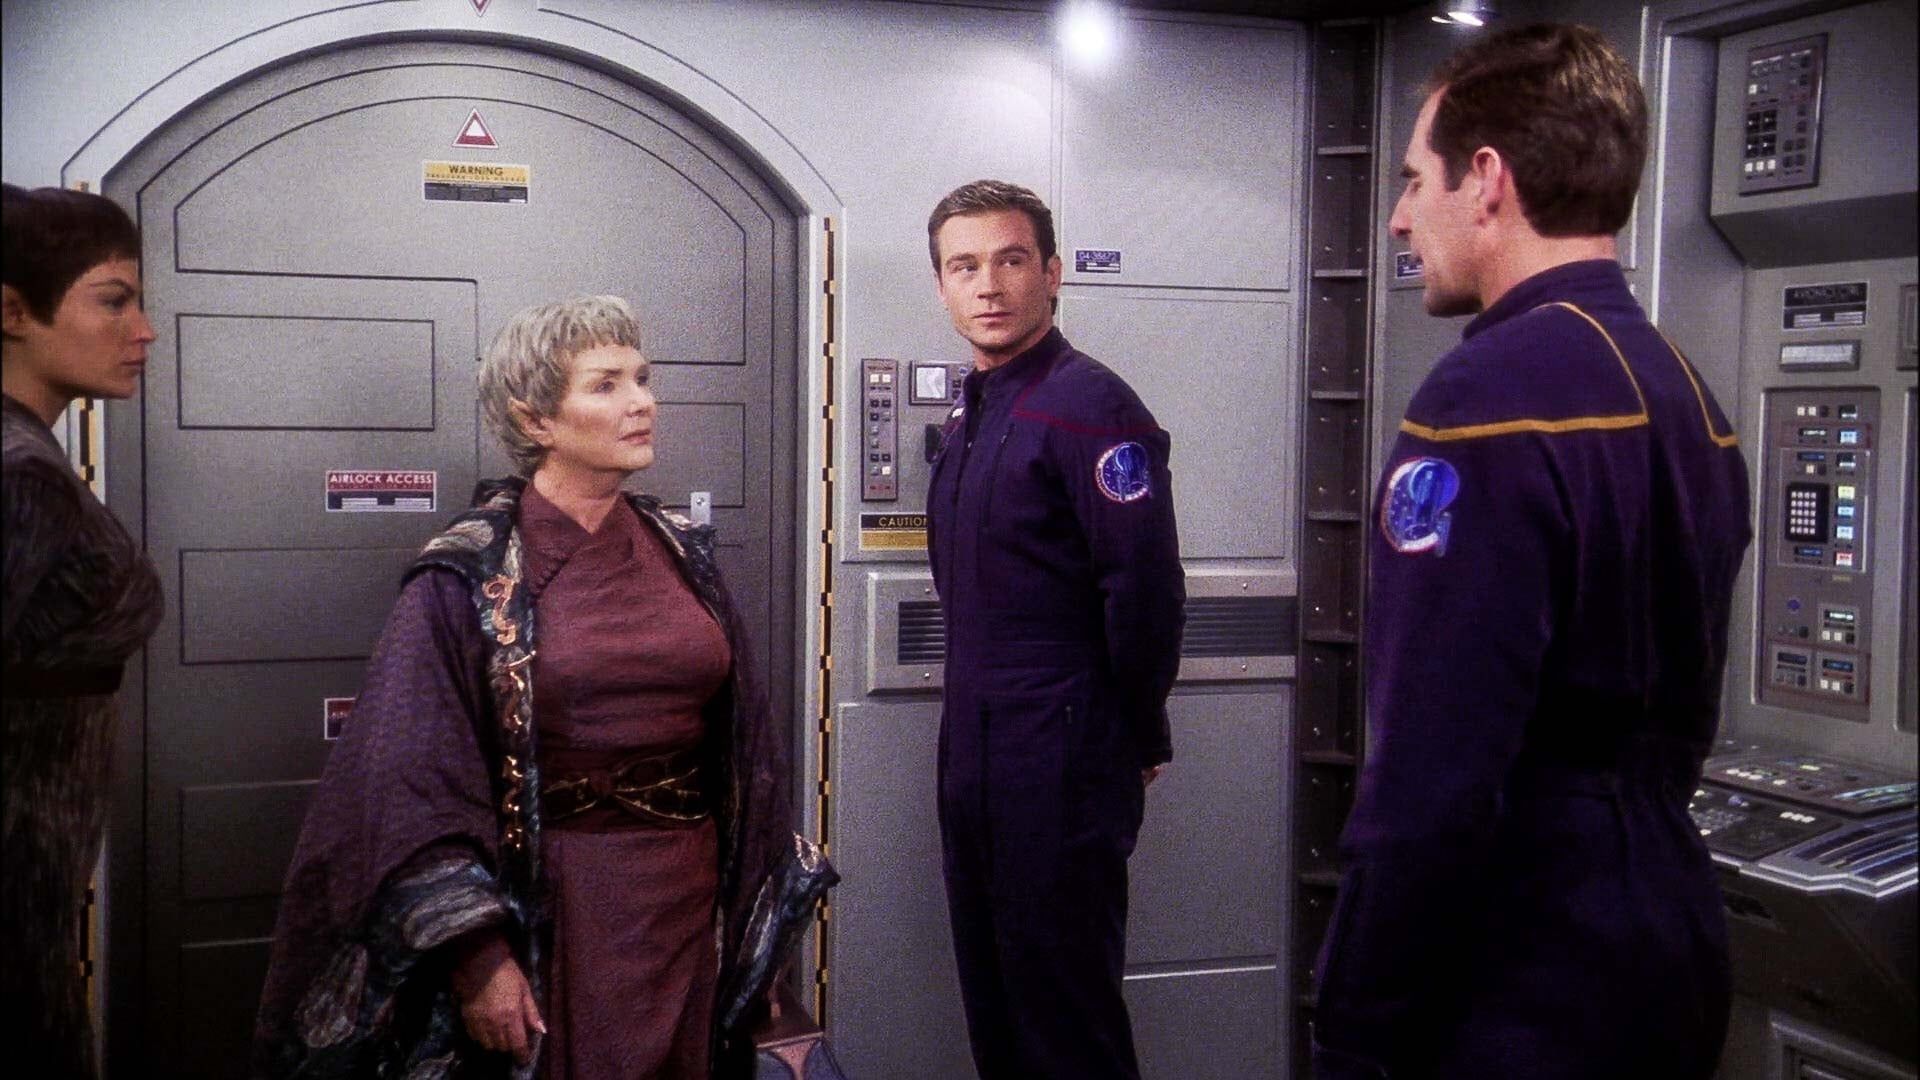 Star Trek: Enterprise background